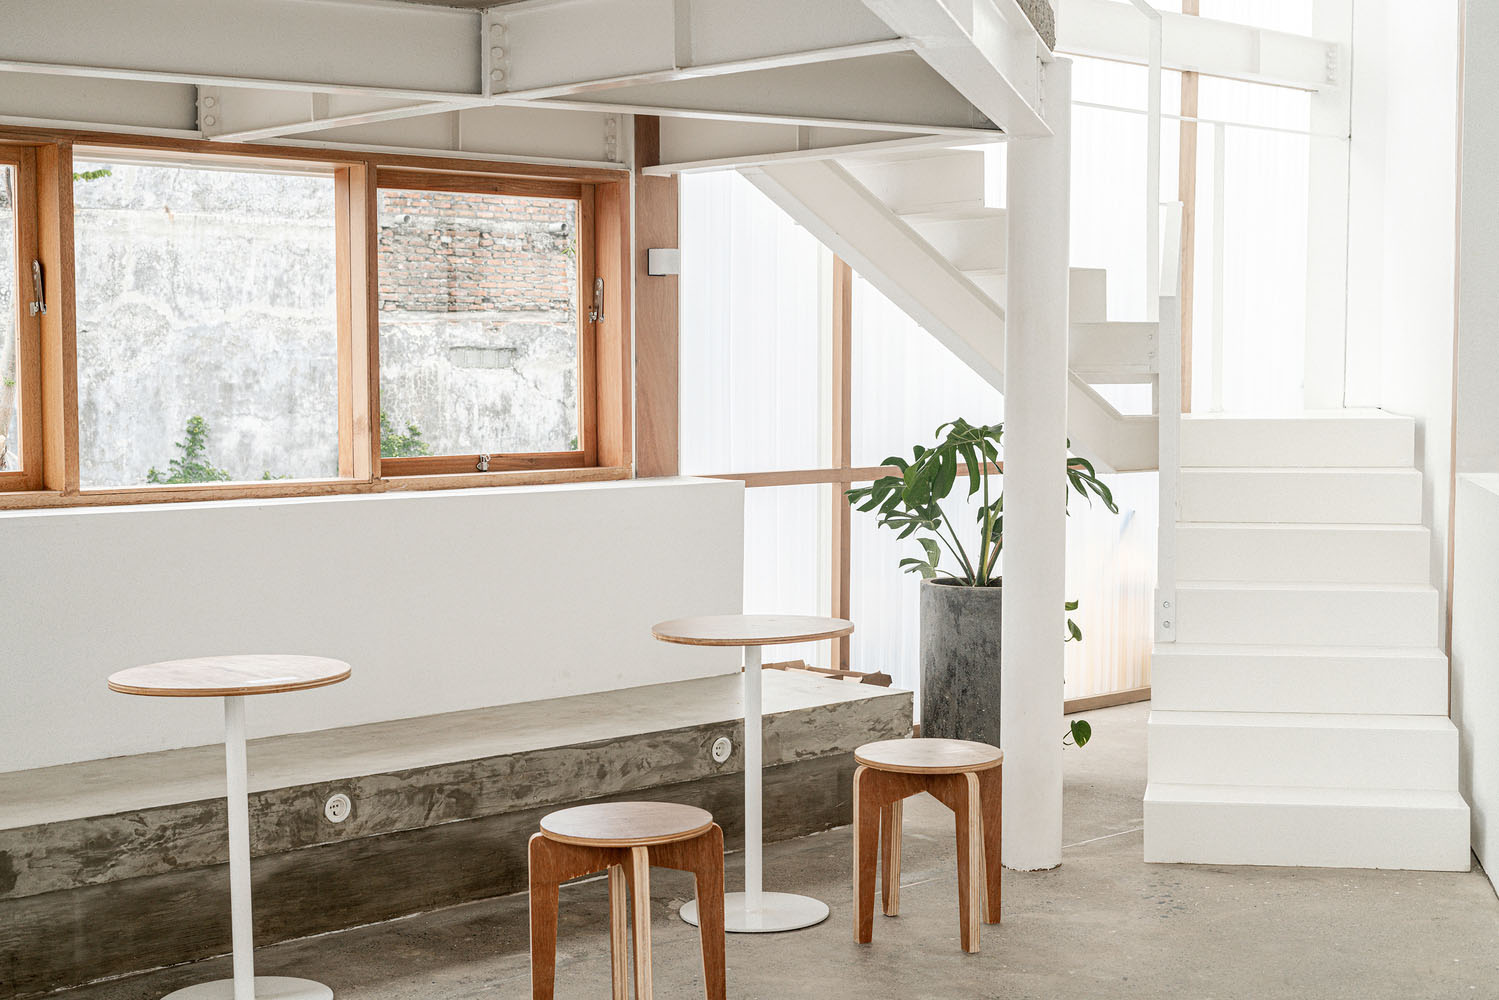 ARA Studio,咖啡厅,咖啡店设计,150㎡咖啡厅设计,Jokopi MERR,白色极简风格咖啡厅,国外咖啡厅设计案例